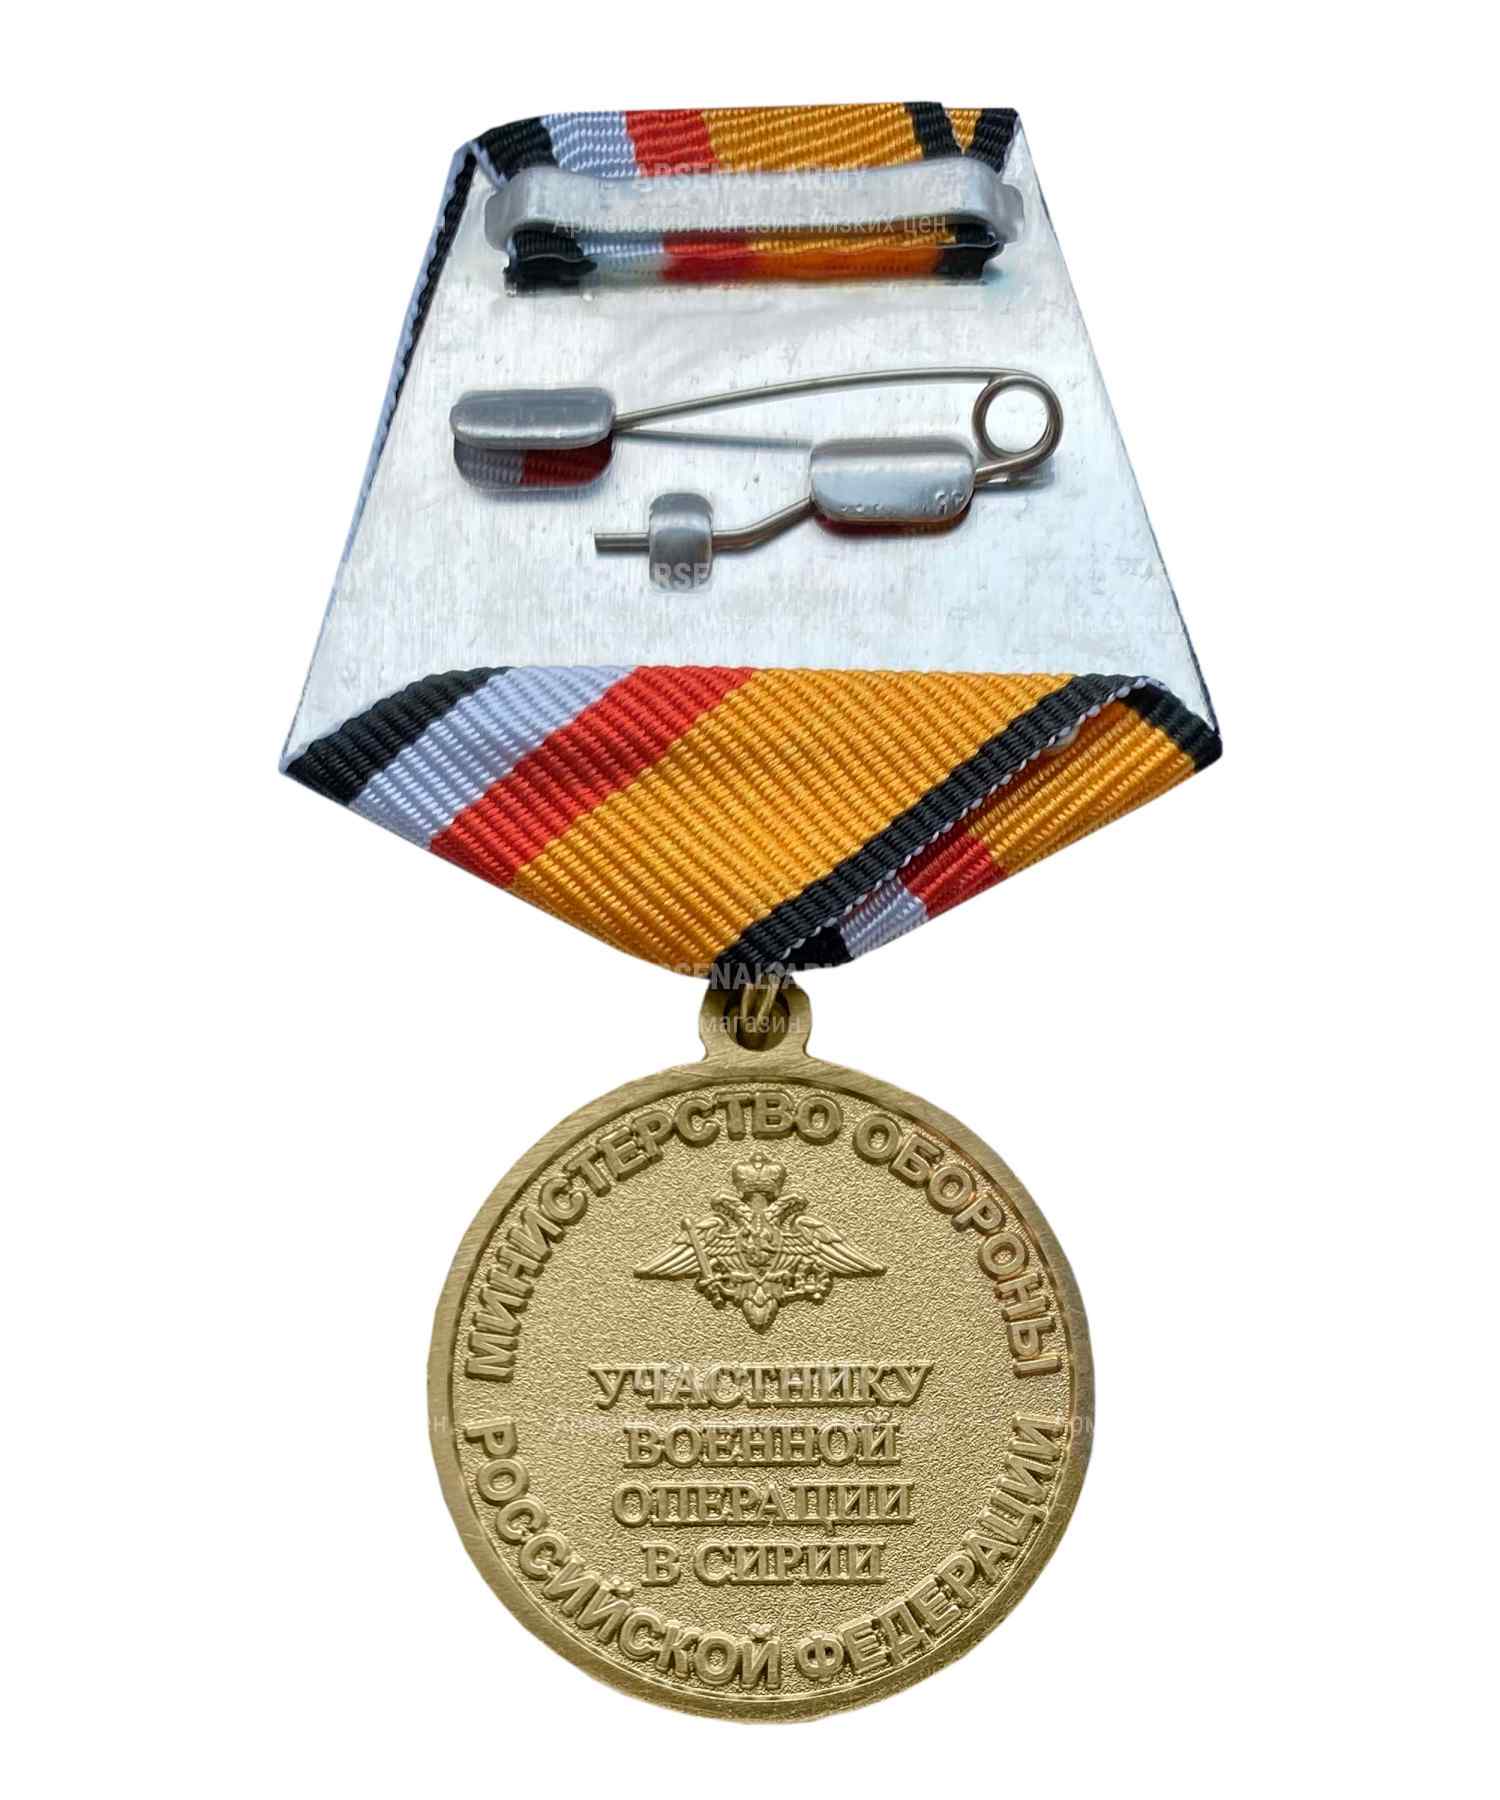 Медаль "Участнику в военной операции в Сирии"